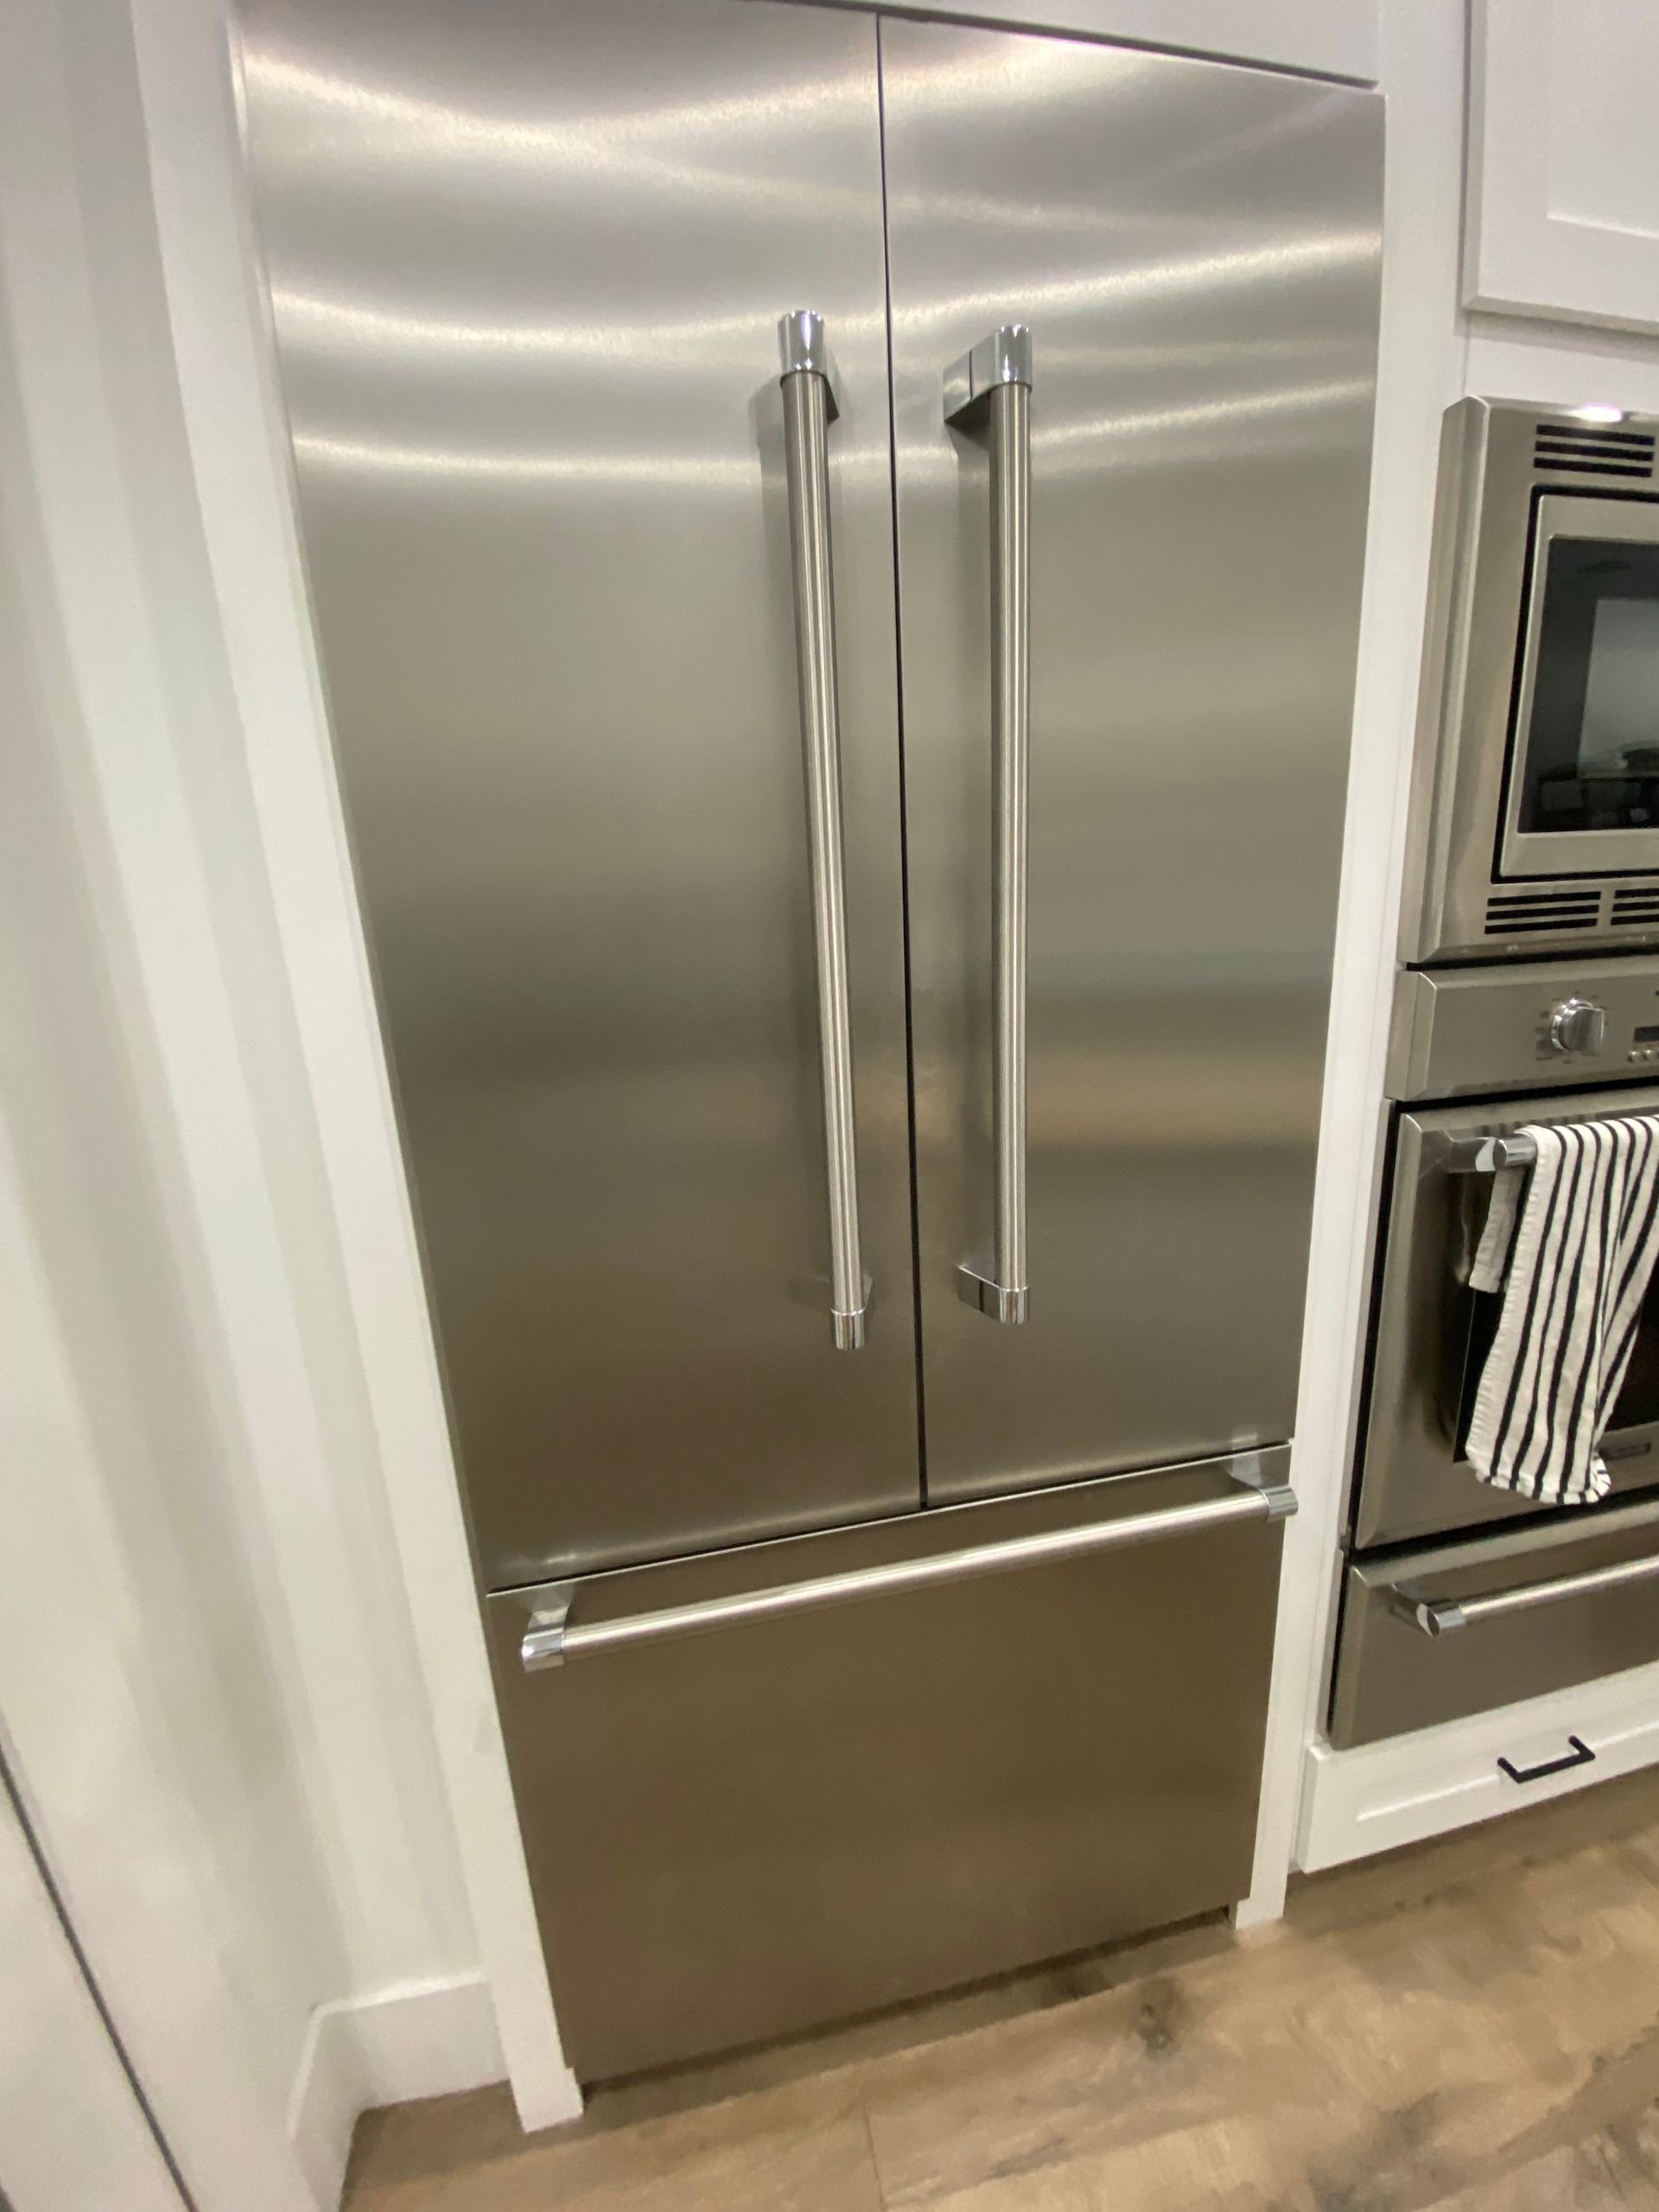 Thermador refrigerator repair Level Appliance Repair